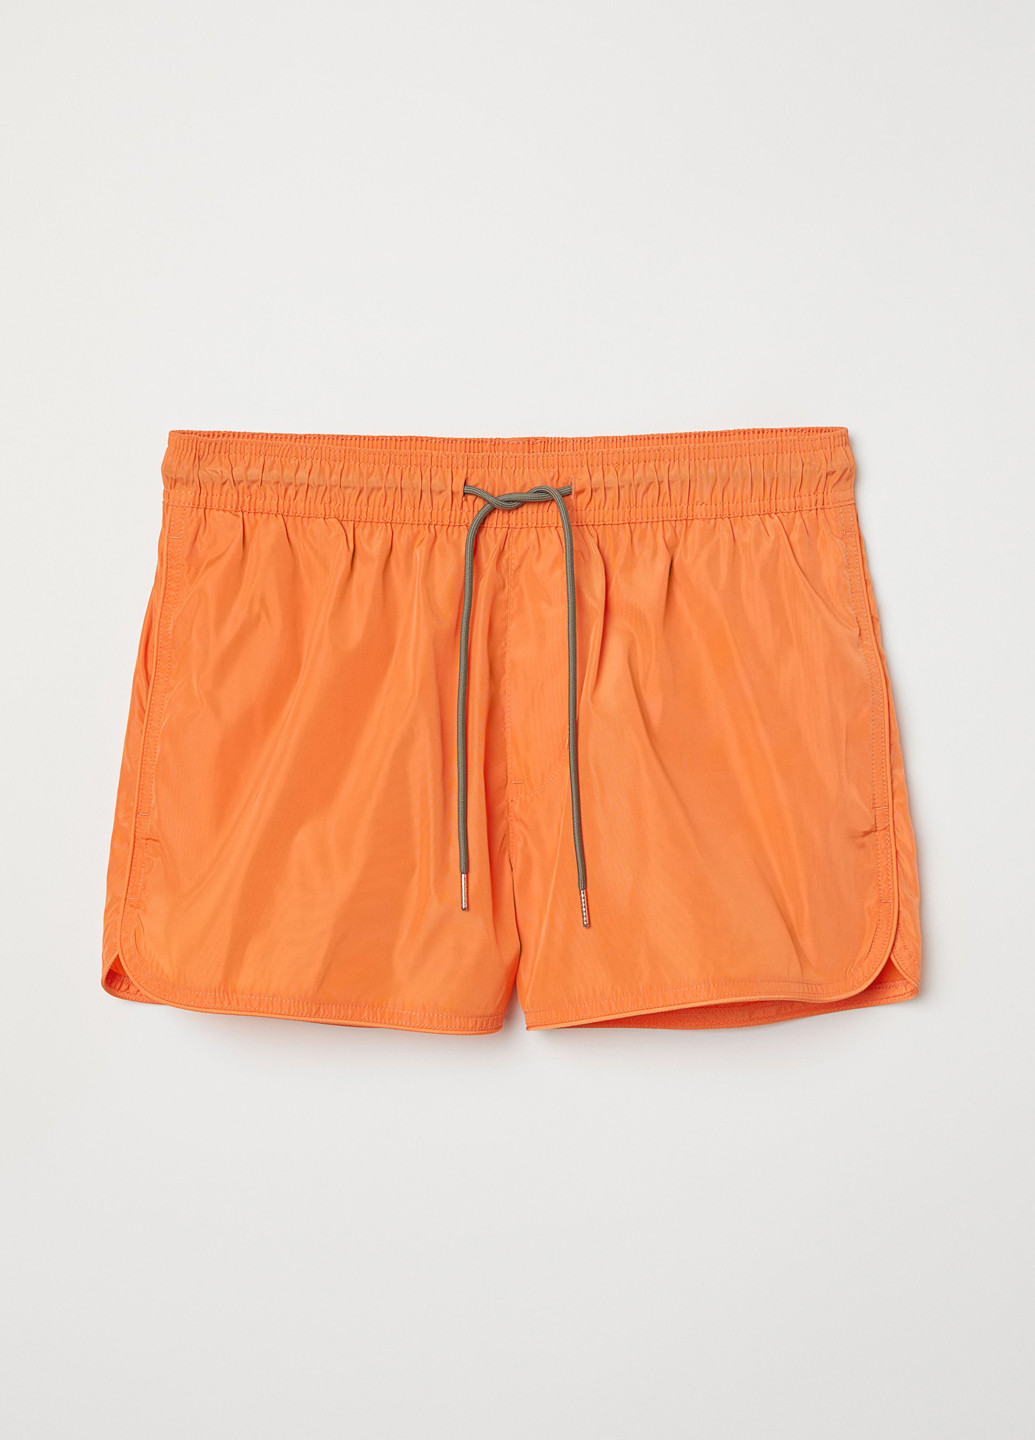 Шорты H&M однотонные оранжевые пляжные полиэстер